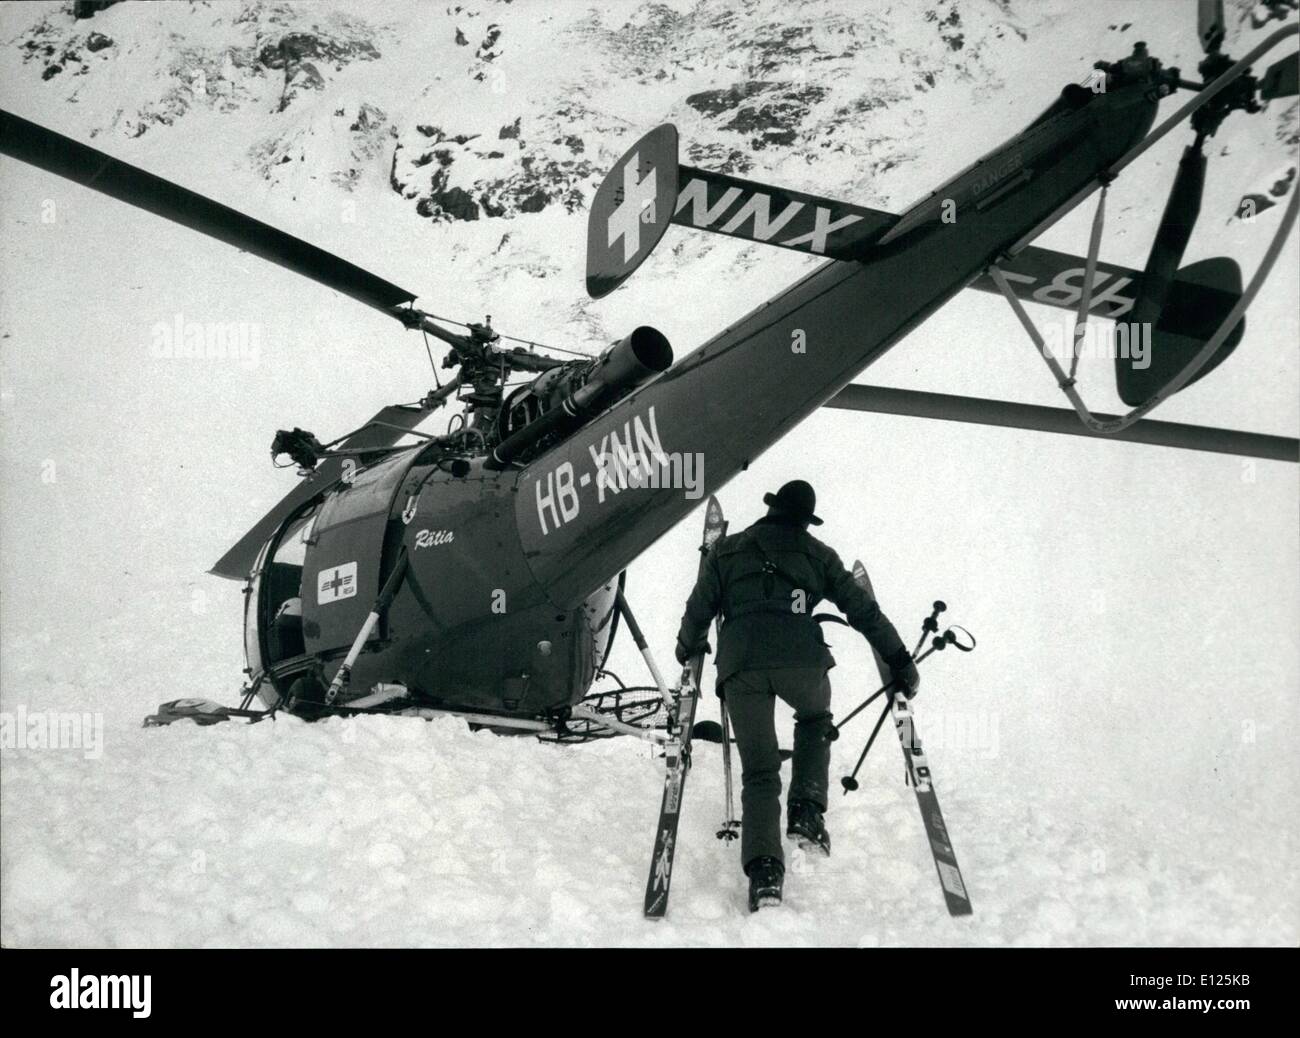 Mar 03, 1988 - Klosters / Svizzera :Royal tragedia di sci. Un Salvataggio in elicottero sorge nei pressi del luogo in cui il principe Carlo amico Hugh Lindsay è stato ucciso in una valanga su Marzo 10th. Foto Stock